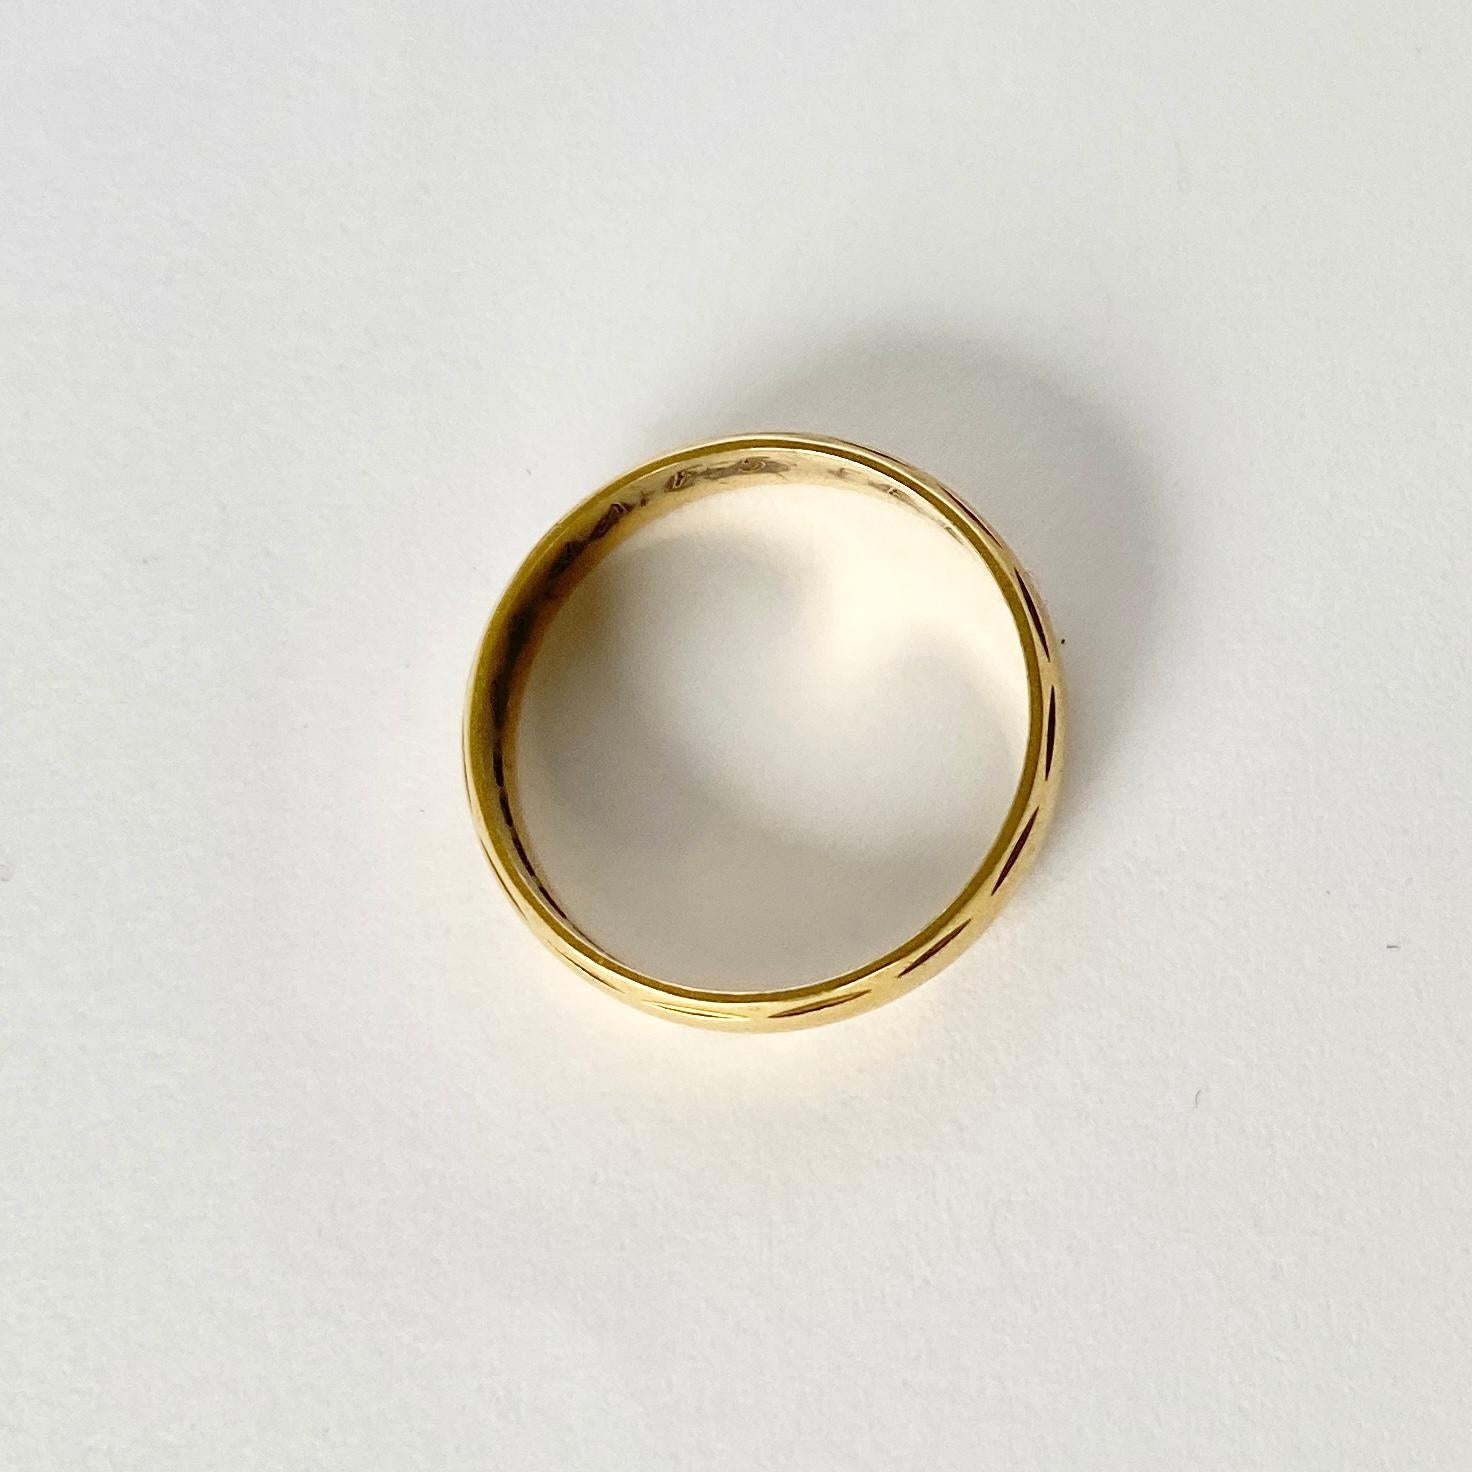 Die Gravur auf diesem 18-karätigen Goldband ist schlicht, aber schön. Dieser Ring eignet sich sowohl für die Hochzeit als auch für das tägliche Tragen. Gekennzeichnet mit dem Gütesiegel London 1970.

Ring Größe: N oder 6 3/4
Bandbreite: